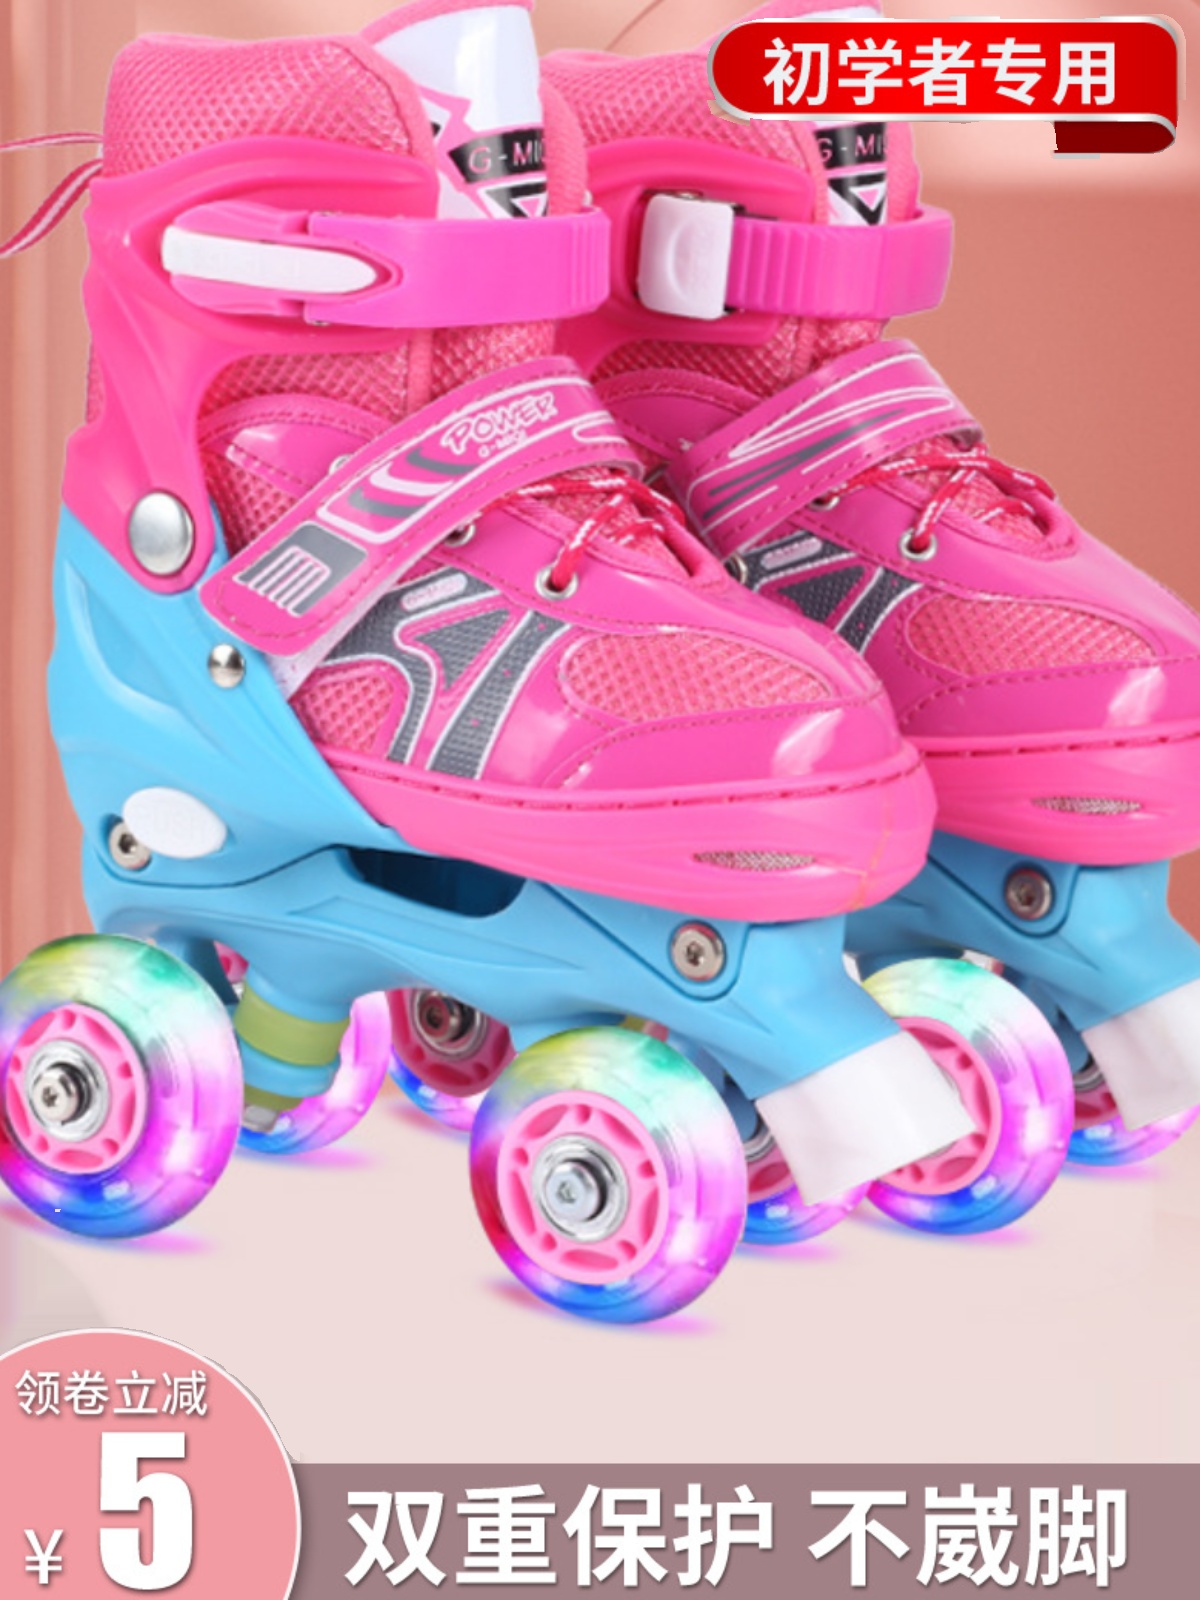 双排轮溜冰鞋四轮轮滑鞋初学滑冰鞋男女生儿童旱冰鞋闪光轮